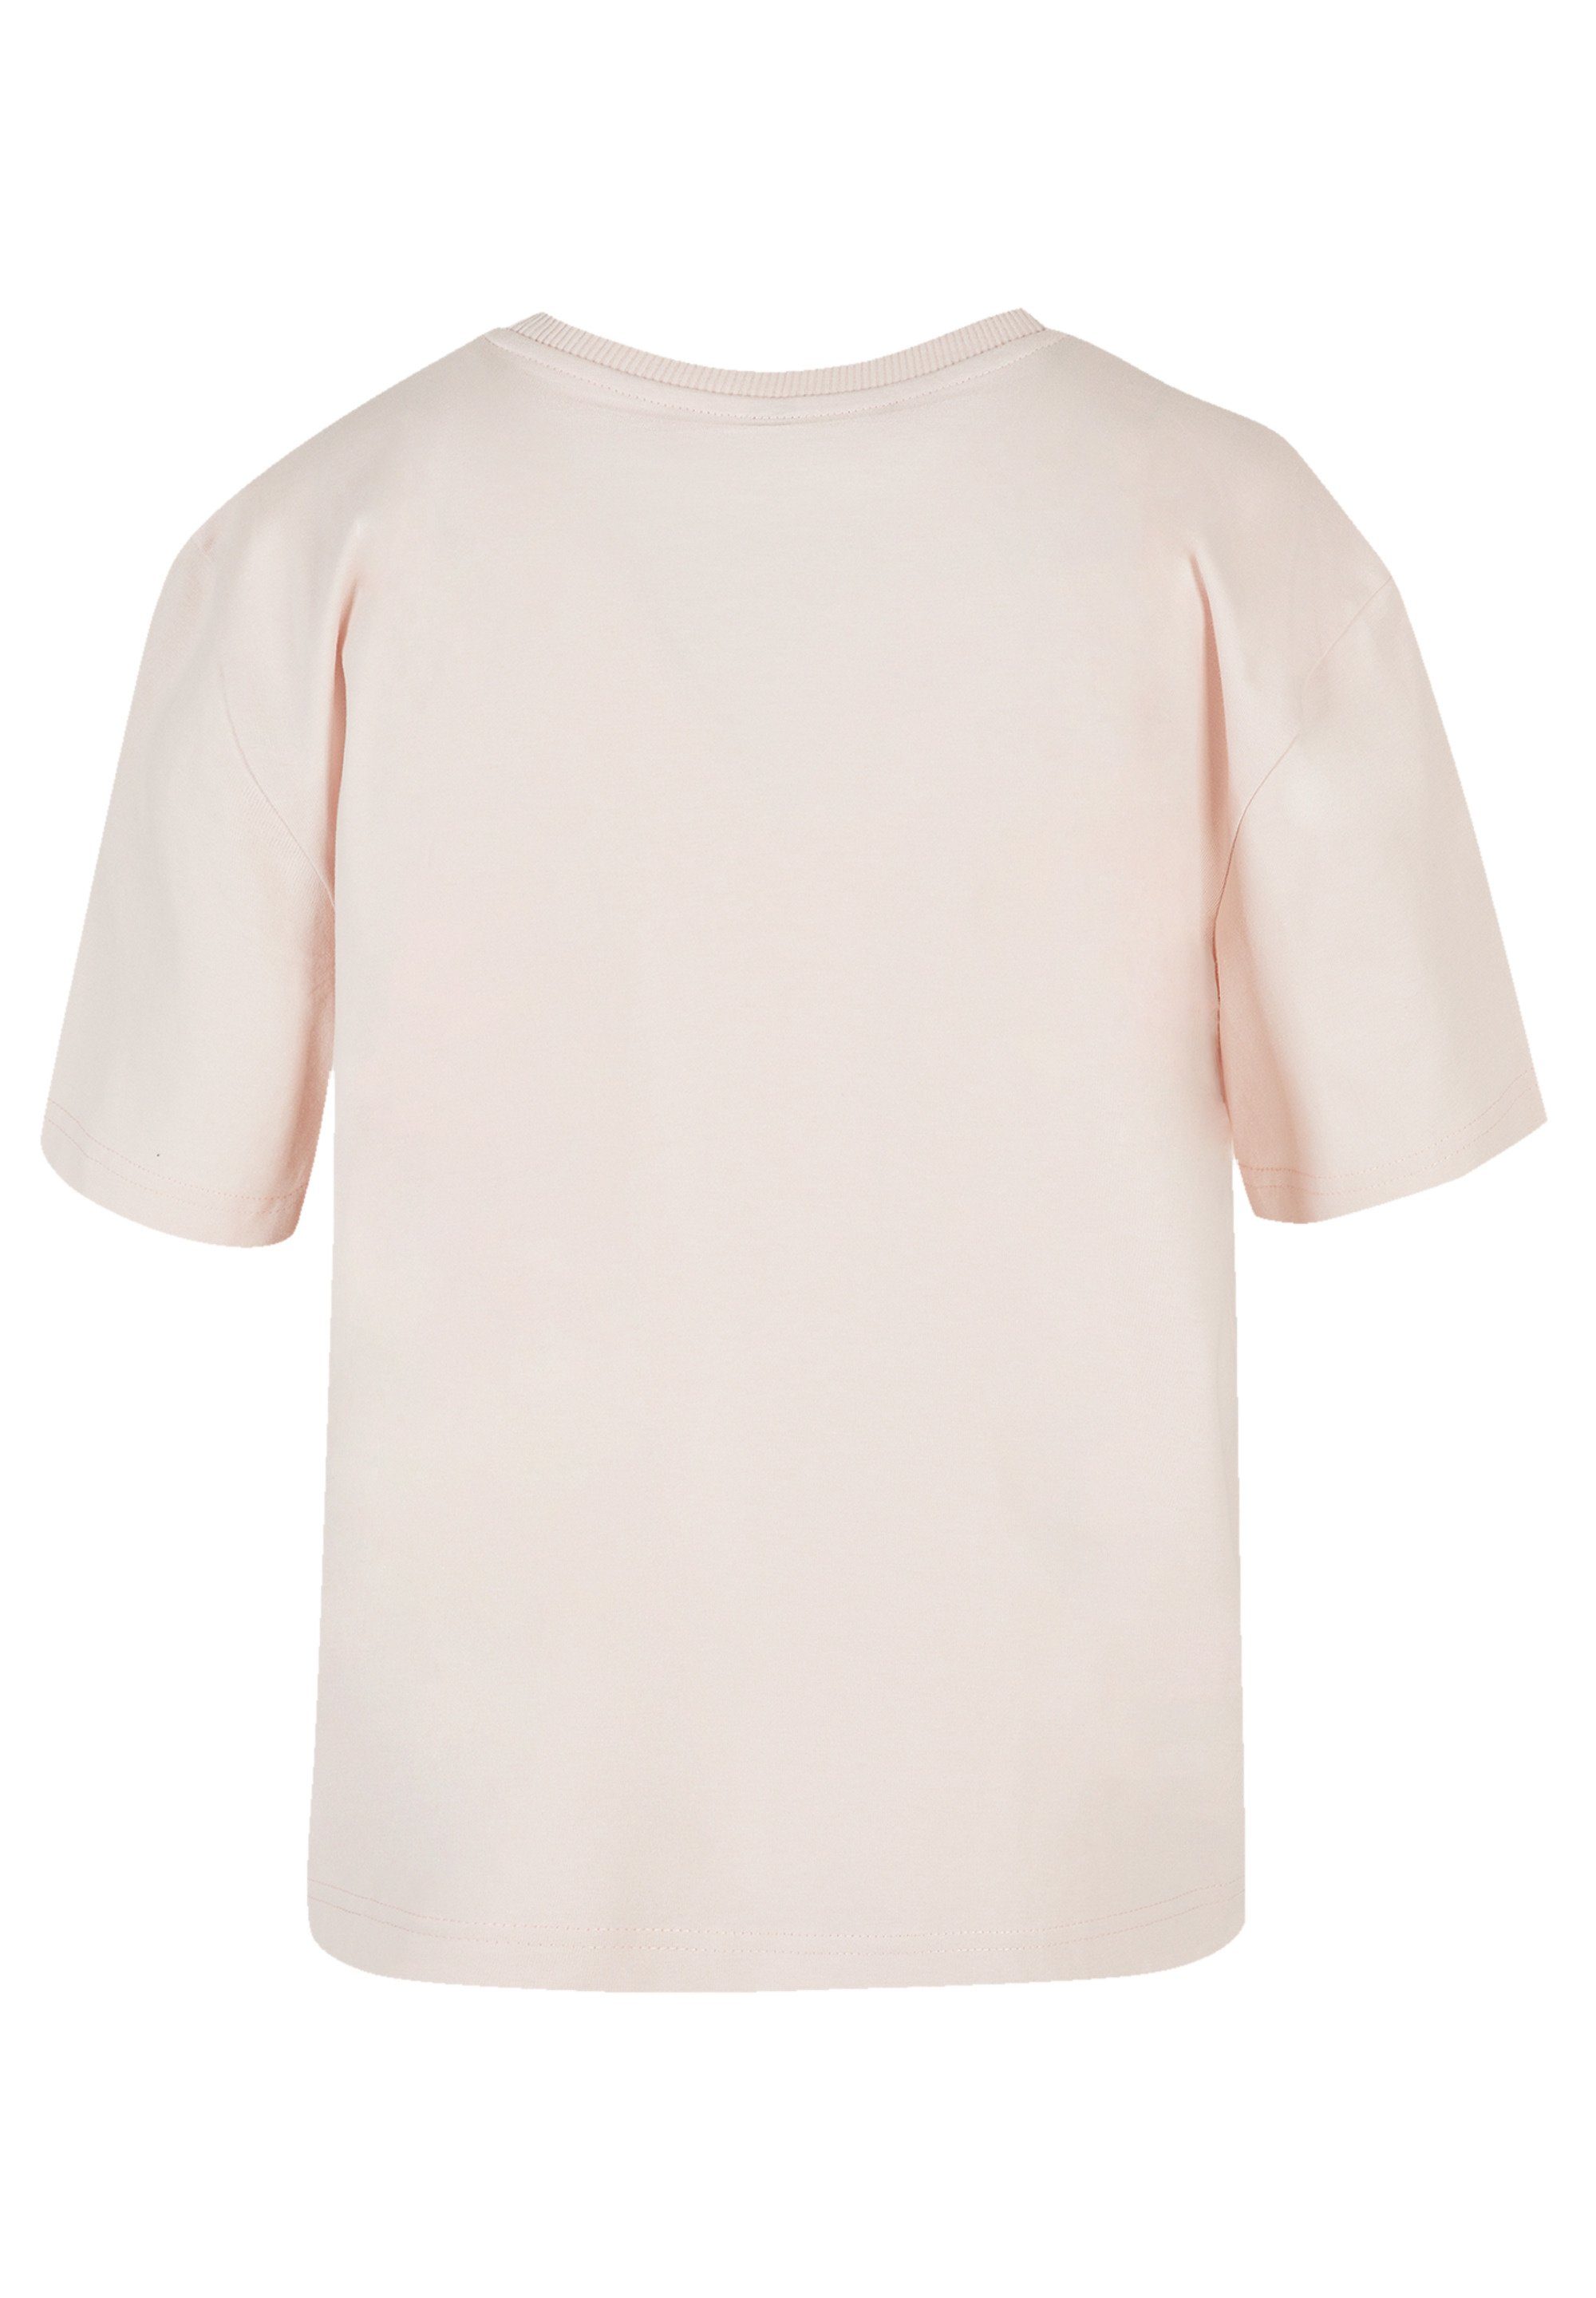 F4NT4STIC T-Shirt Kirschblüten Print, Gerippter Rundhalsausschnitt für  stylischen Look | T-Shirts